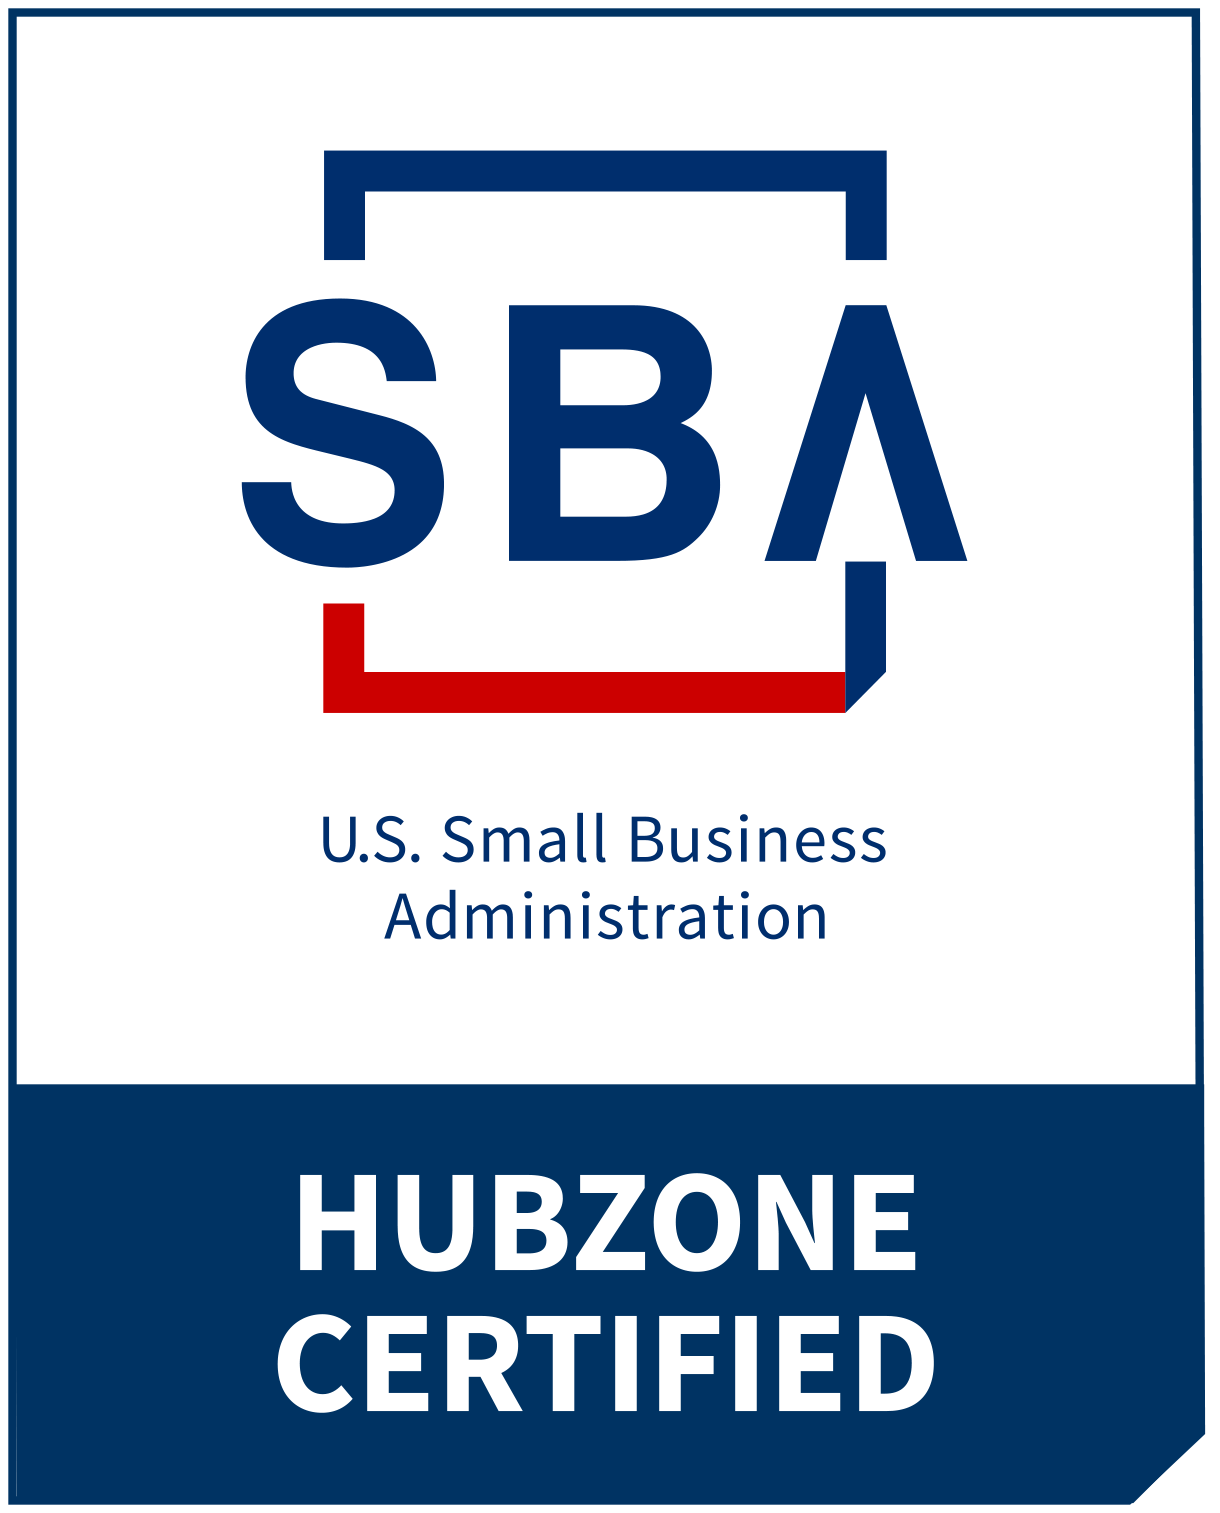 HUBZone Certified